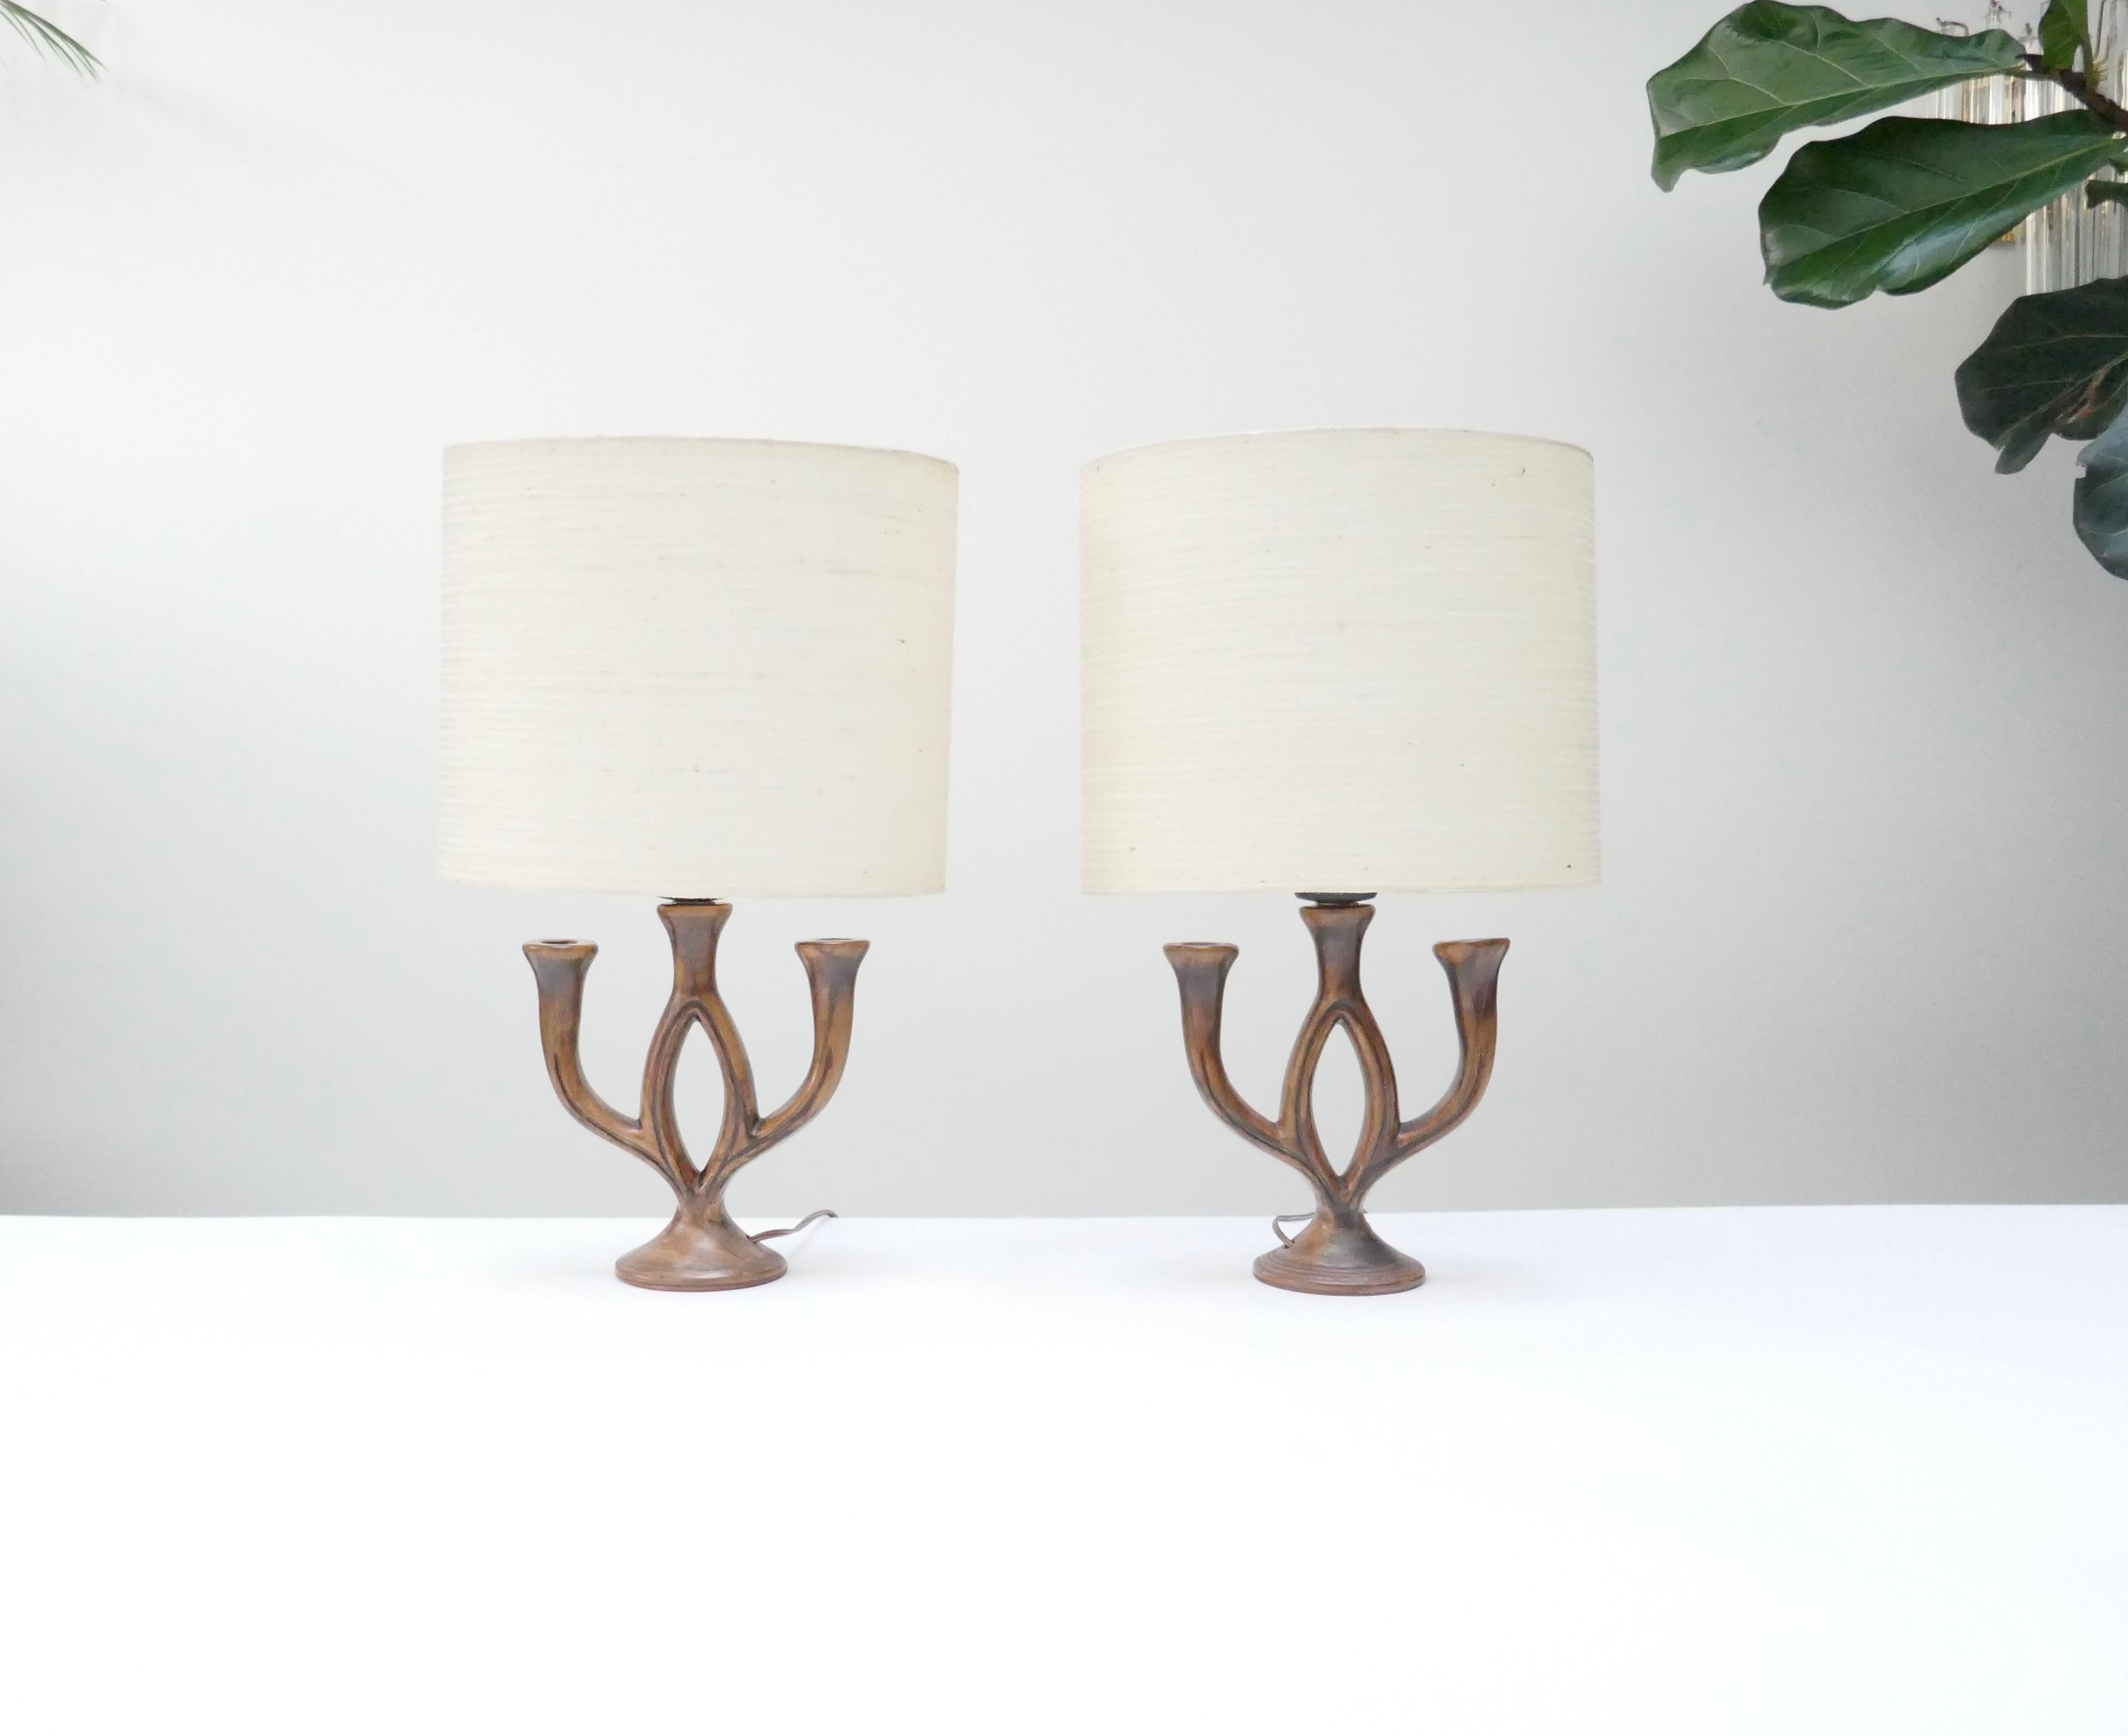 2 lampes de table de bonne taille en céramique marron signées Les Grottes Dieulefit .
A l'origine, il s'agissait de chandeliers utilisés comme lampes de table. 
Ils sont peints comme du bois avec une finition mate.

Ils sont l'œuvre de la Poterie